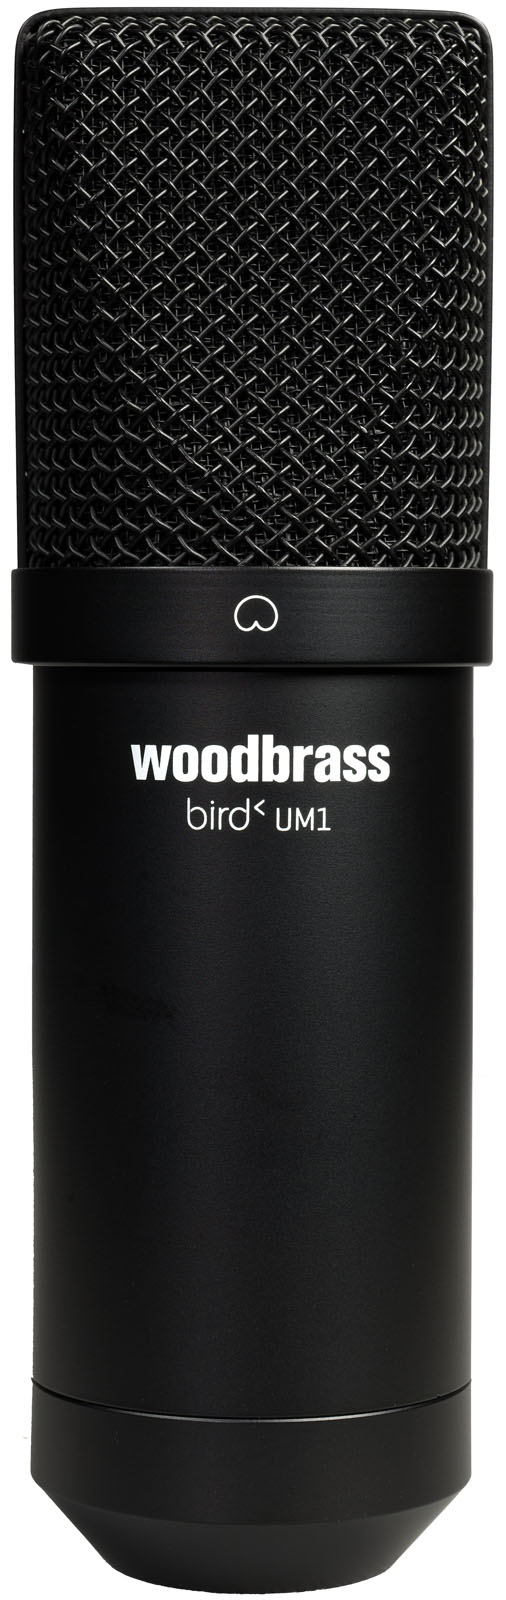 WOODBRASS BIRD UM1 - REFURBISHED